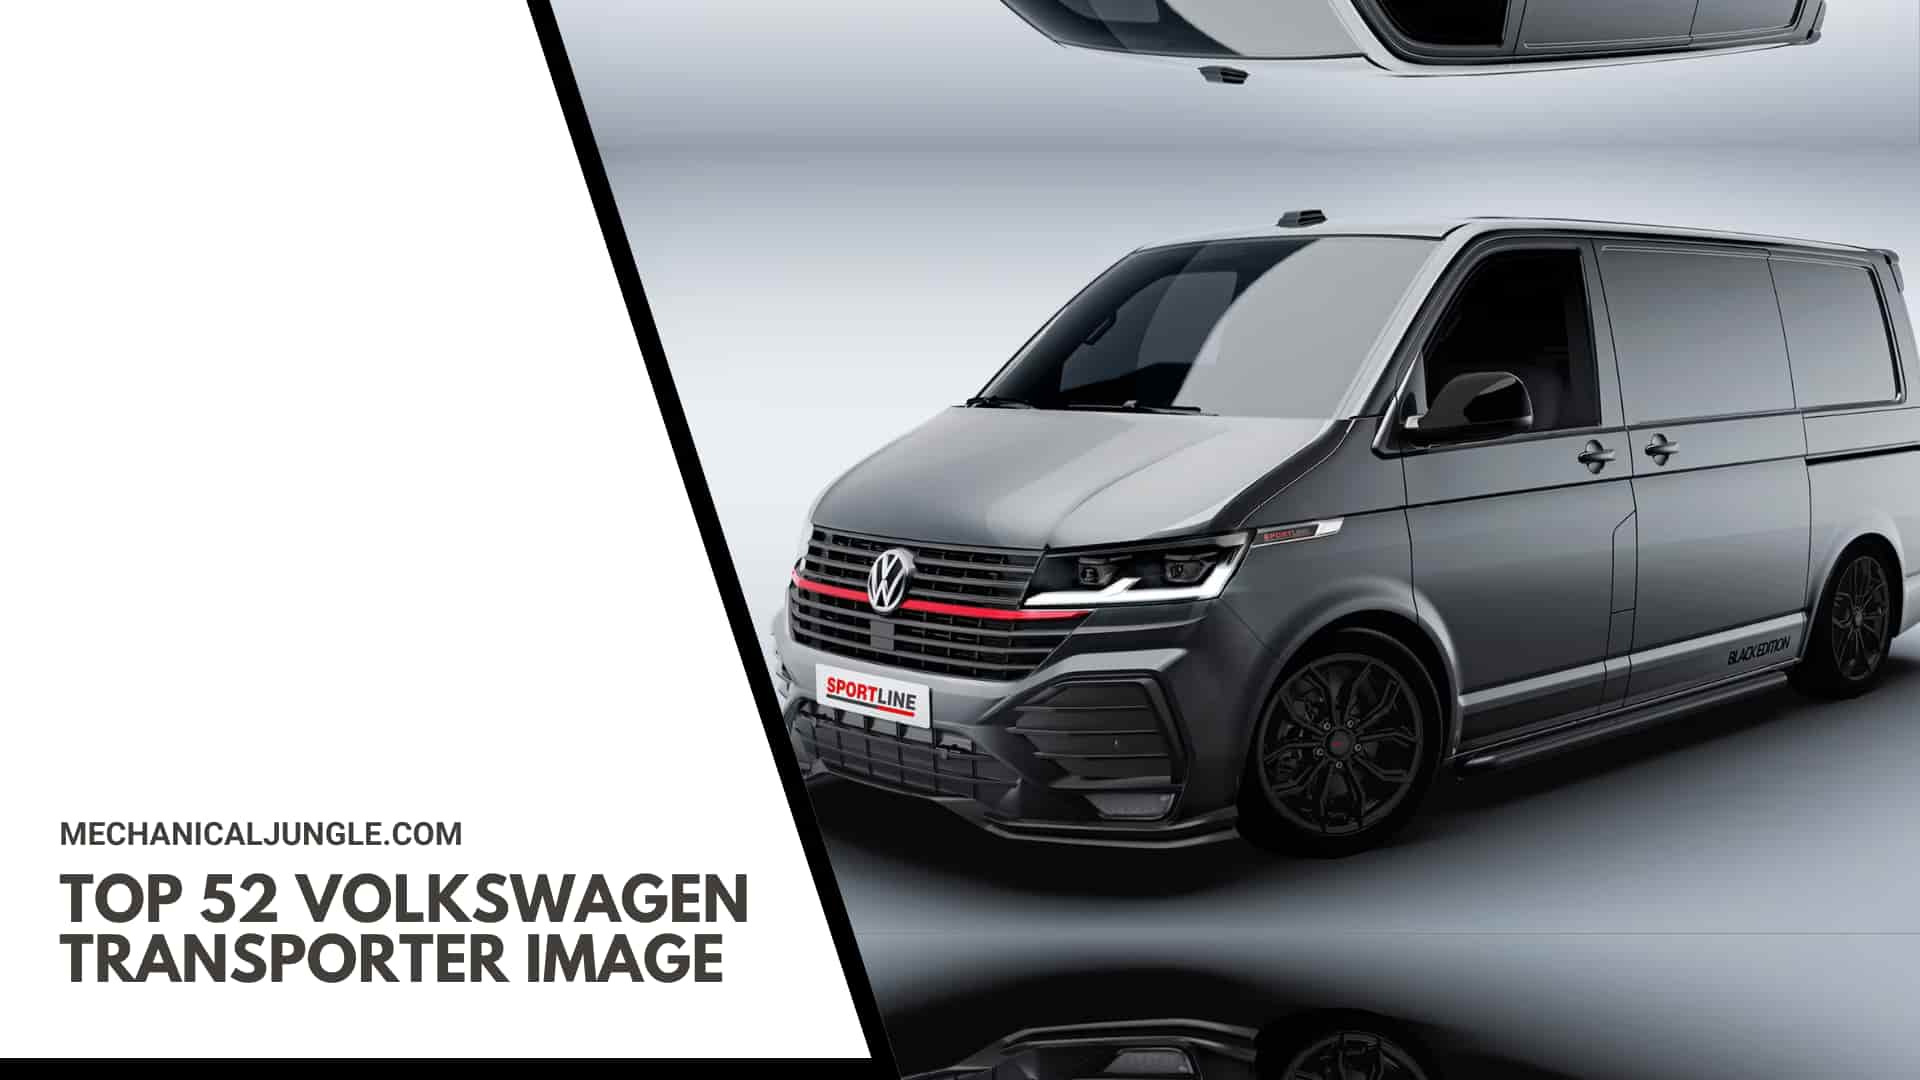 Top 52 Volkswagen Transporter Image